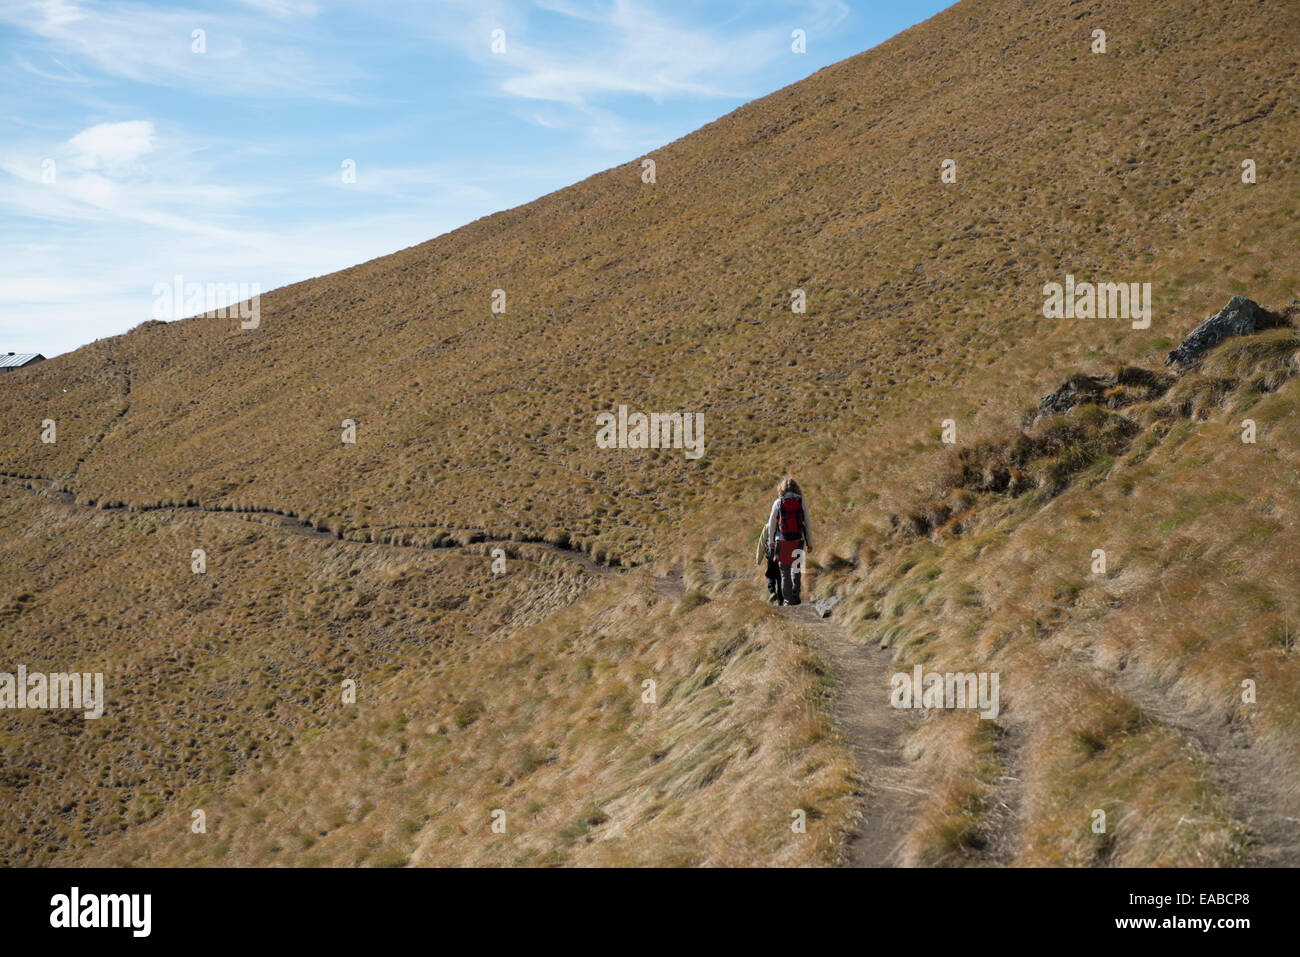 Frau und tipo wandern auf Schotterweg donna e bambini escursioni sulla via alpina Foto Stock